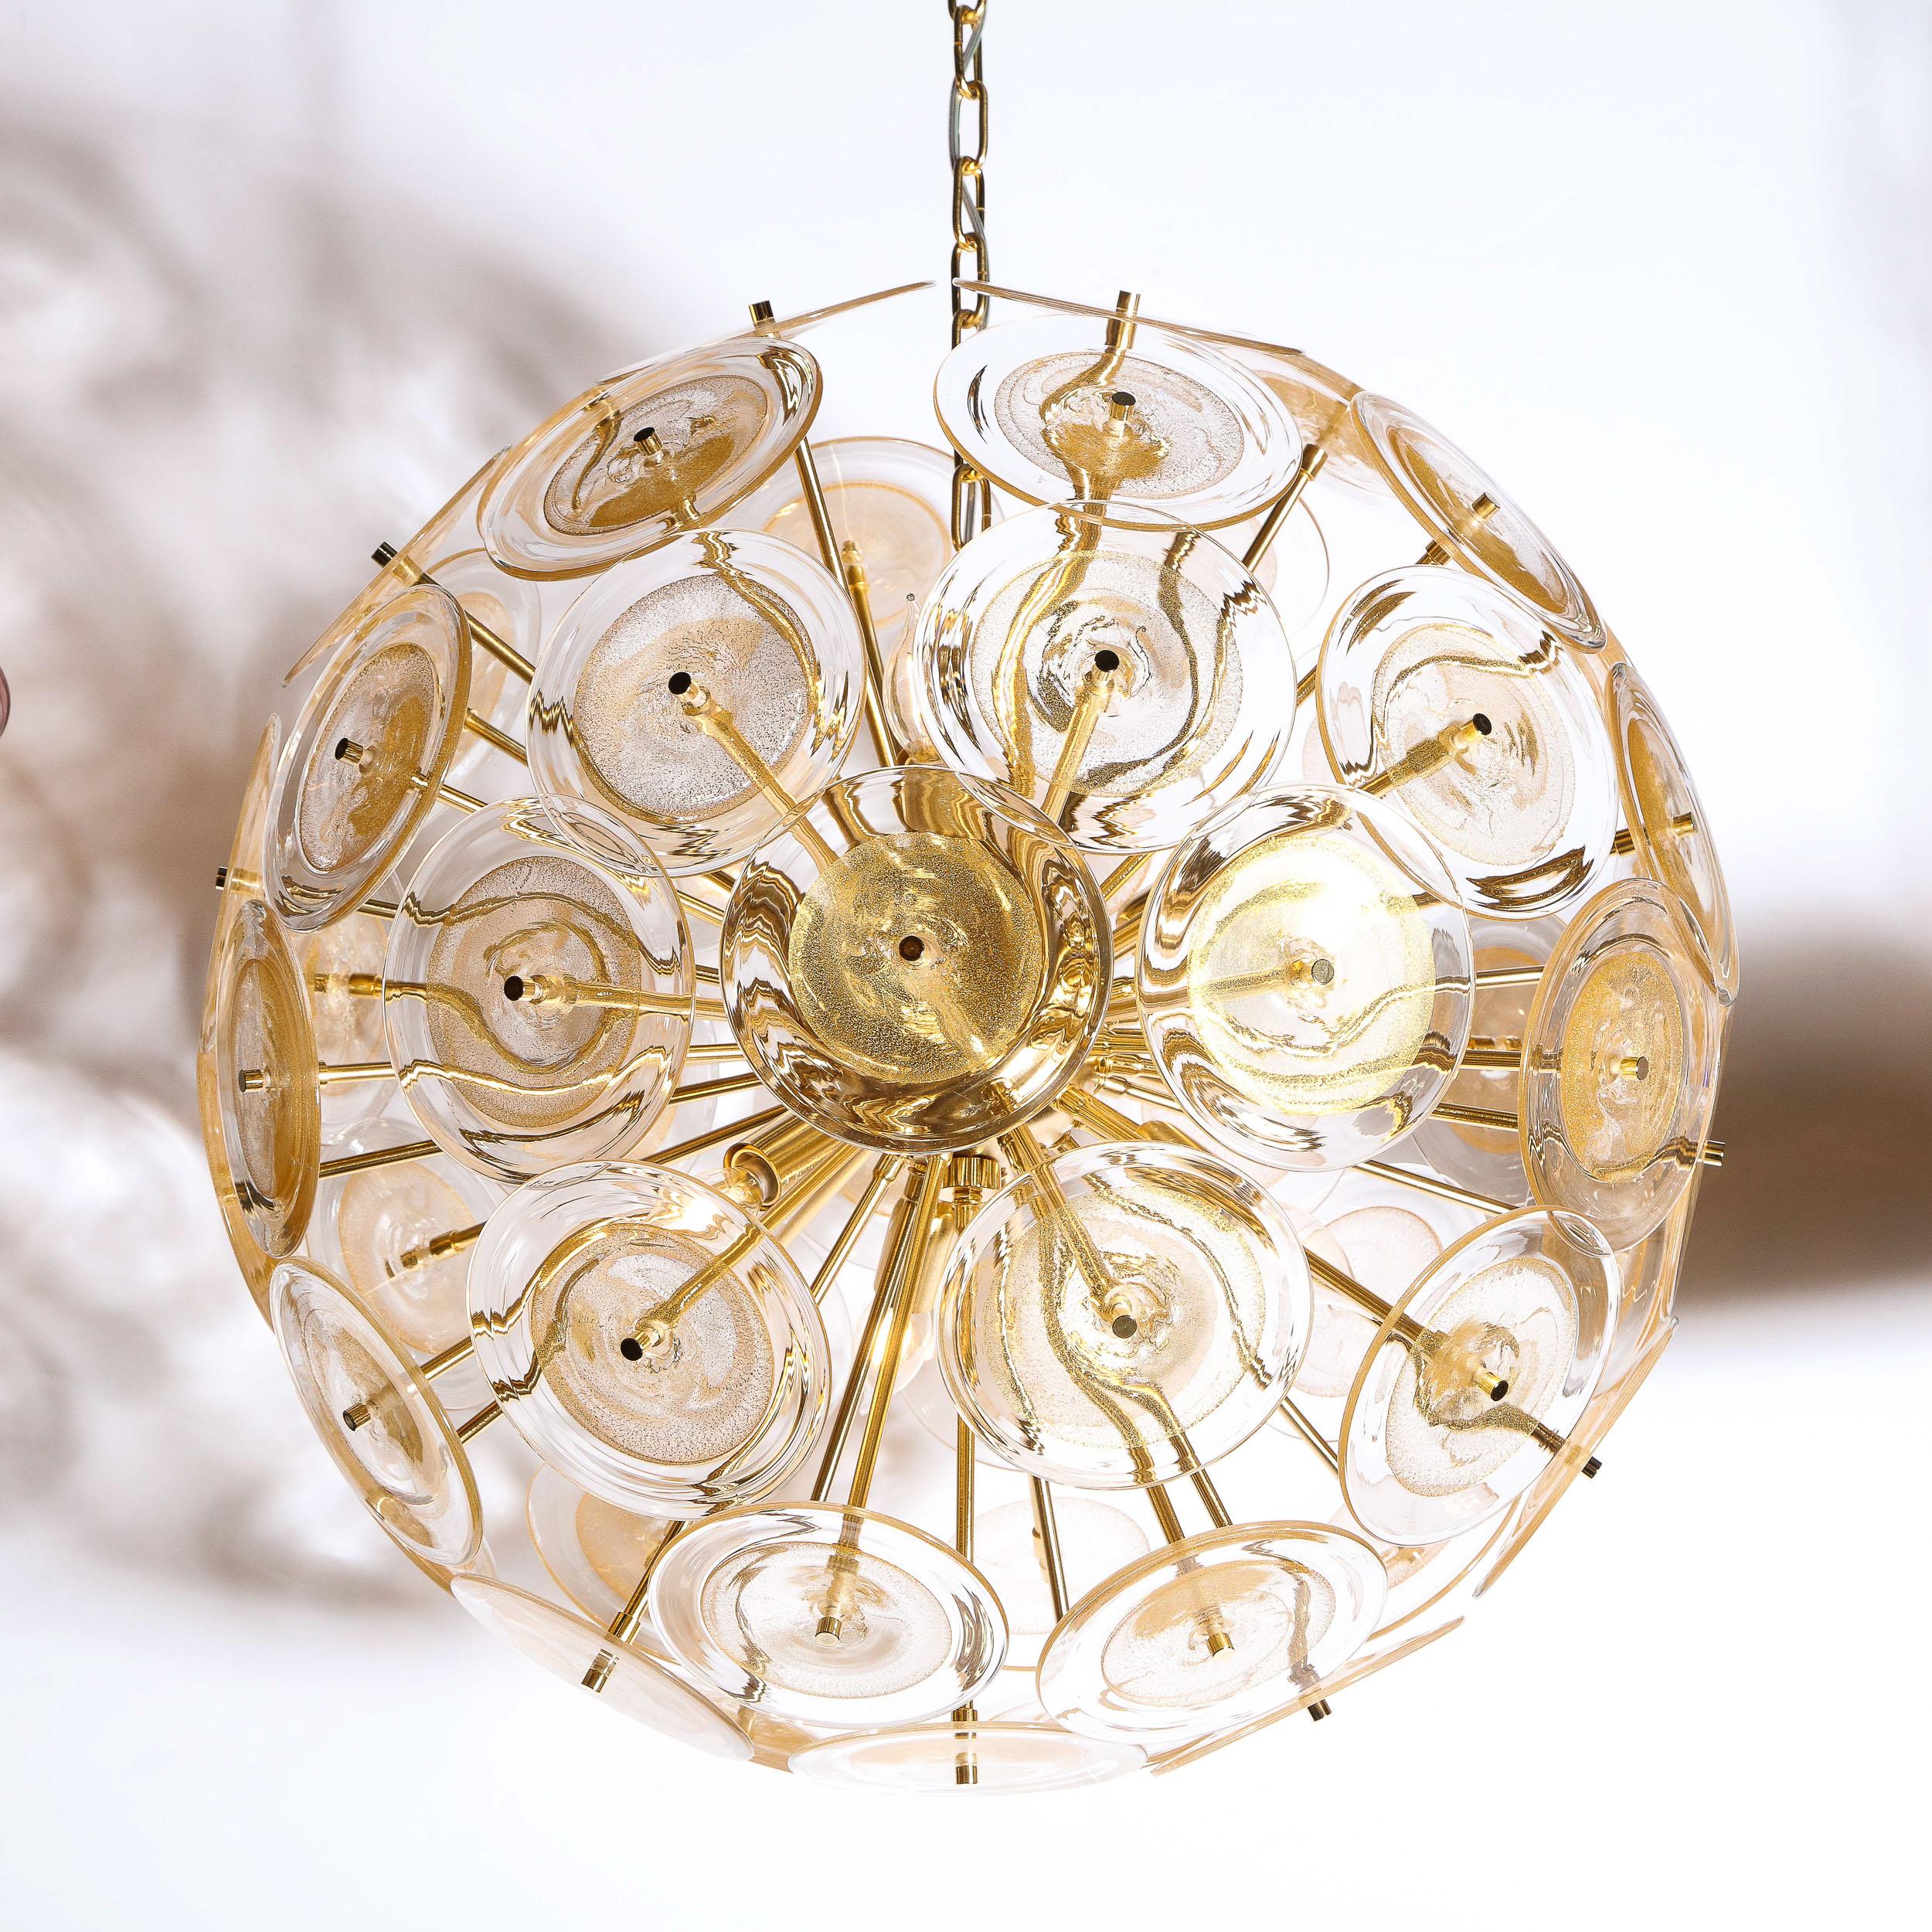 Mid-Century Modern Modernist Brass Sputnik Chandelier W/ Handblown Translucent Murano Glass Discs For Sale